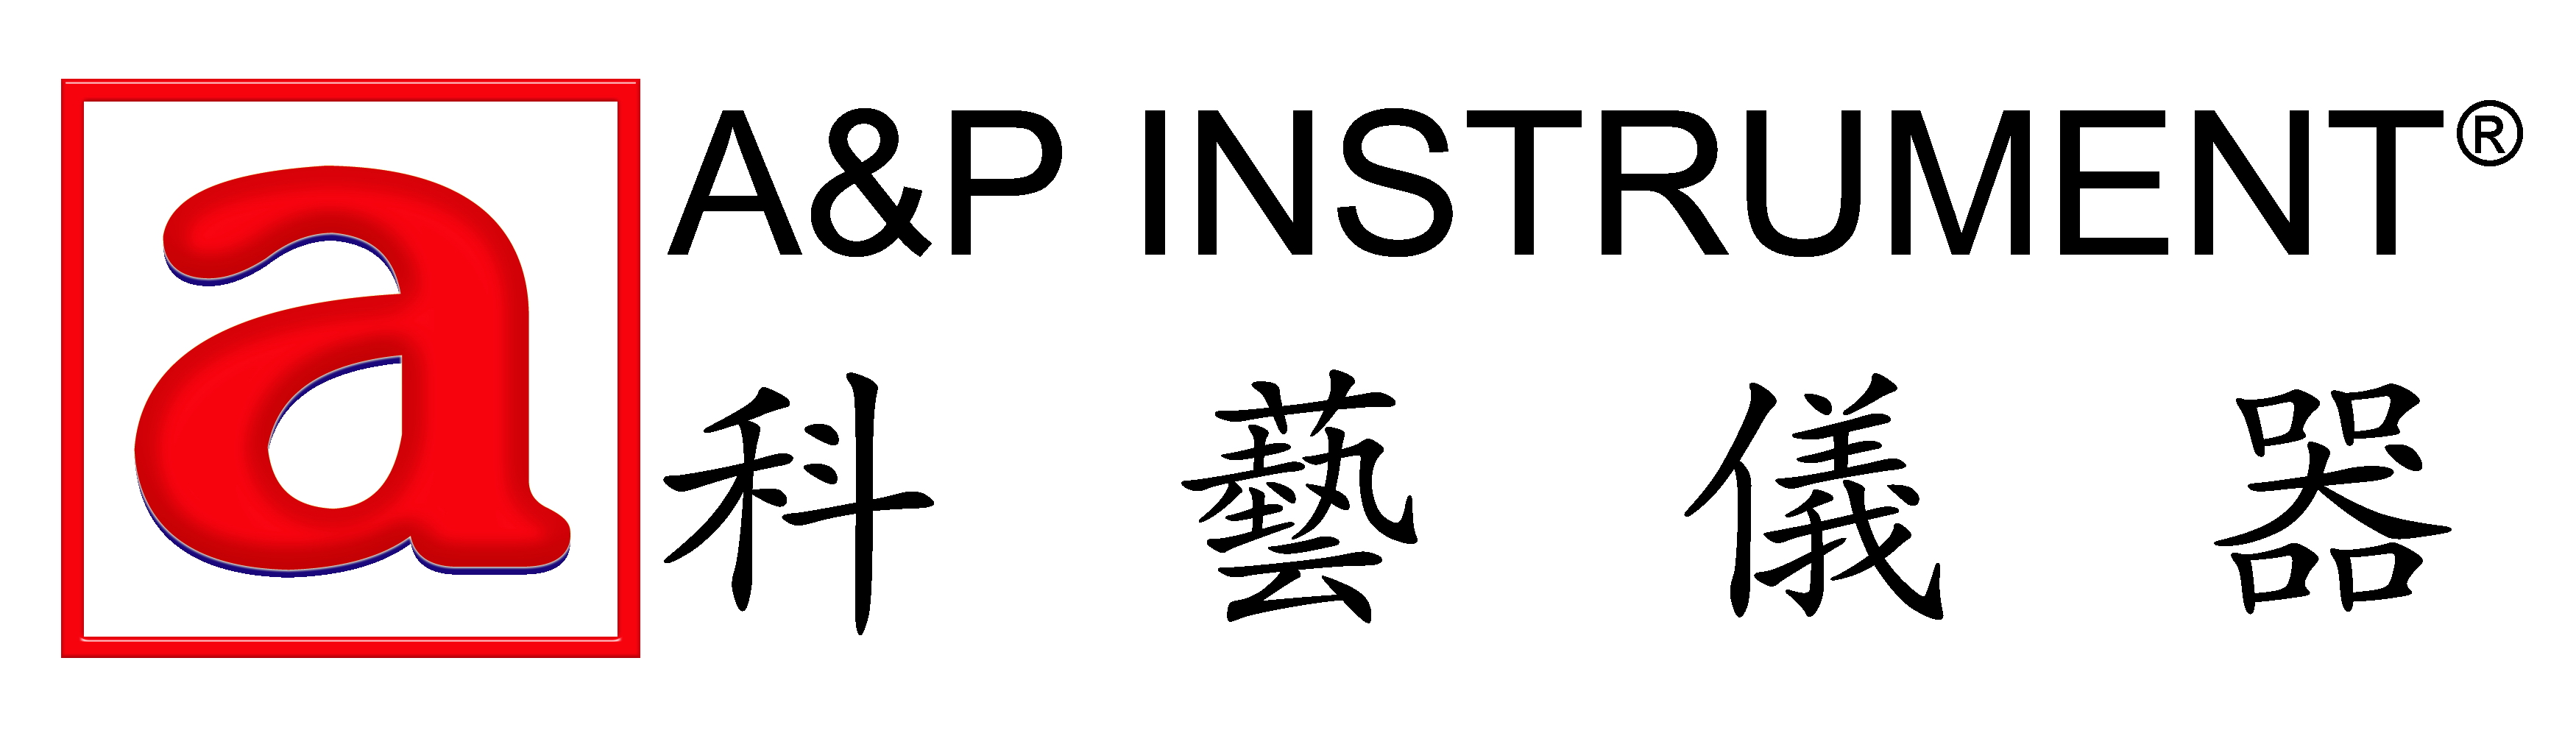 A & P Instrument Co., Ltd